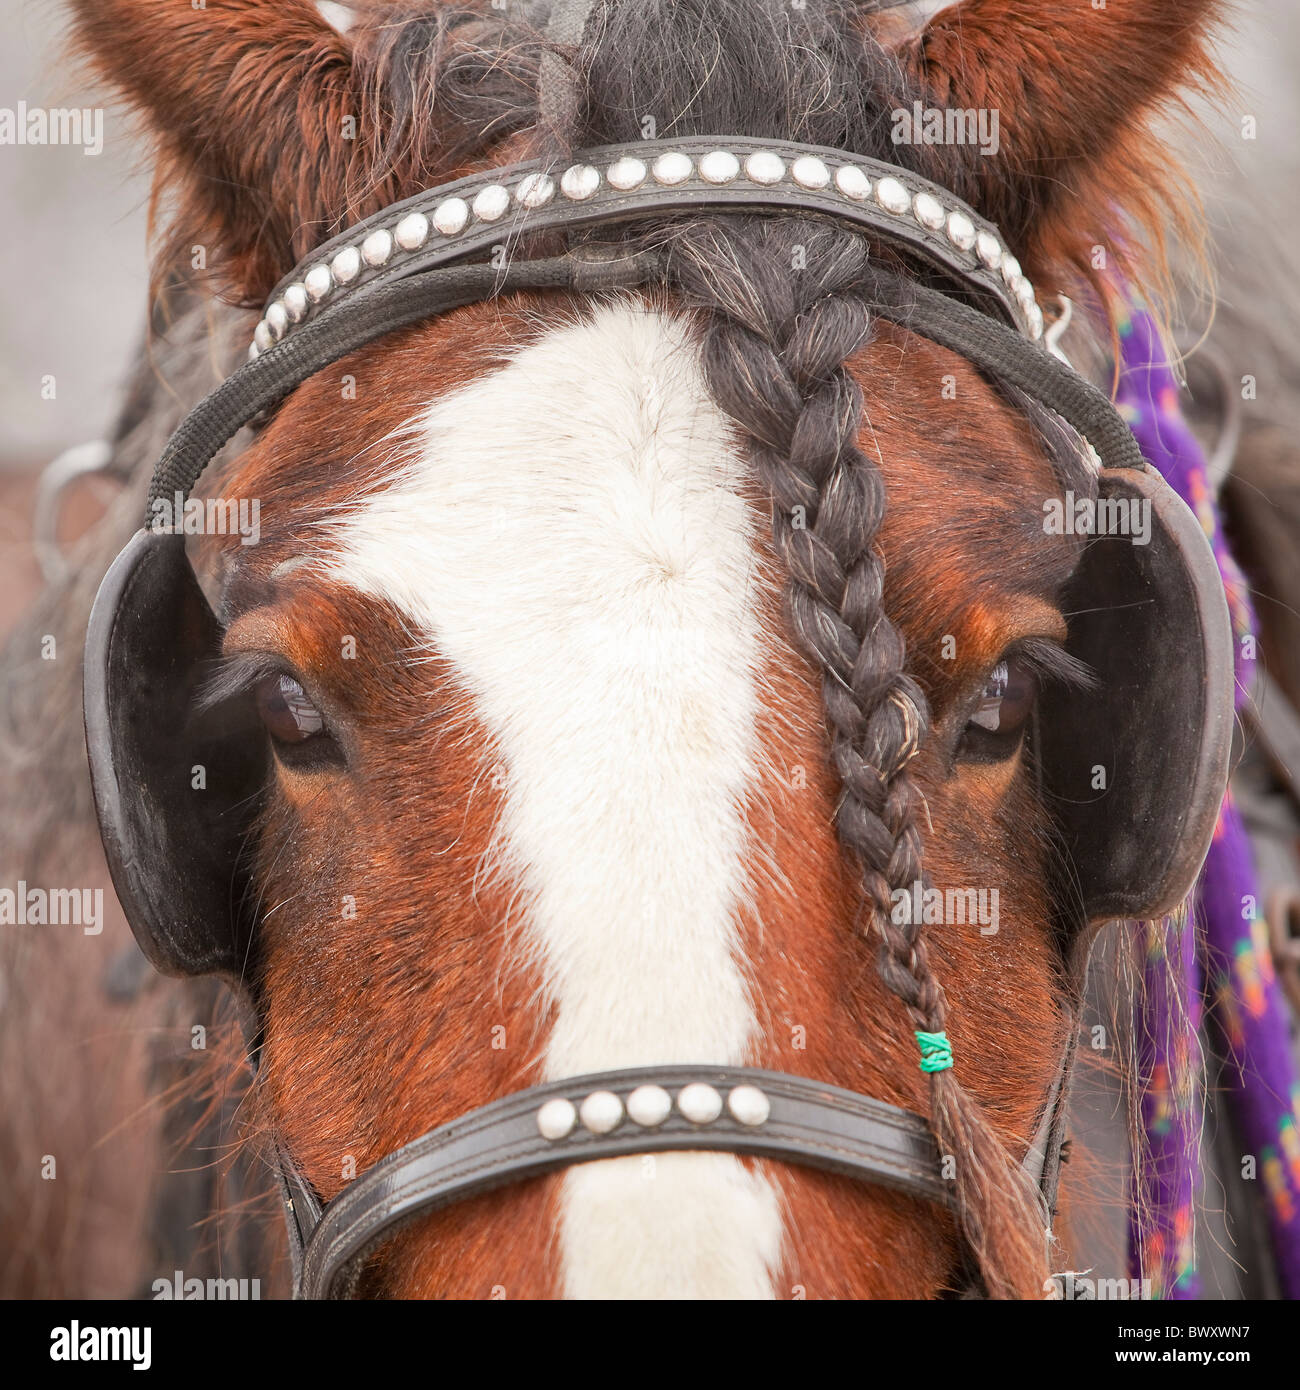 Portrait d'un cheval avec la crinière tressée Clydesdale, vêtu de faisceau électrique Banque D'Images